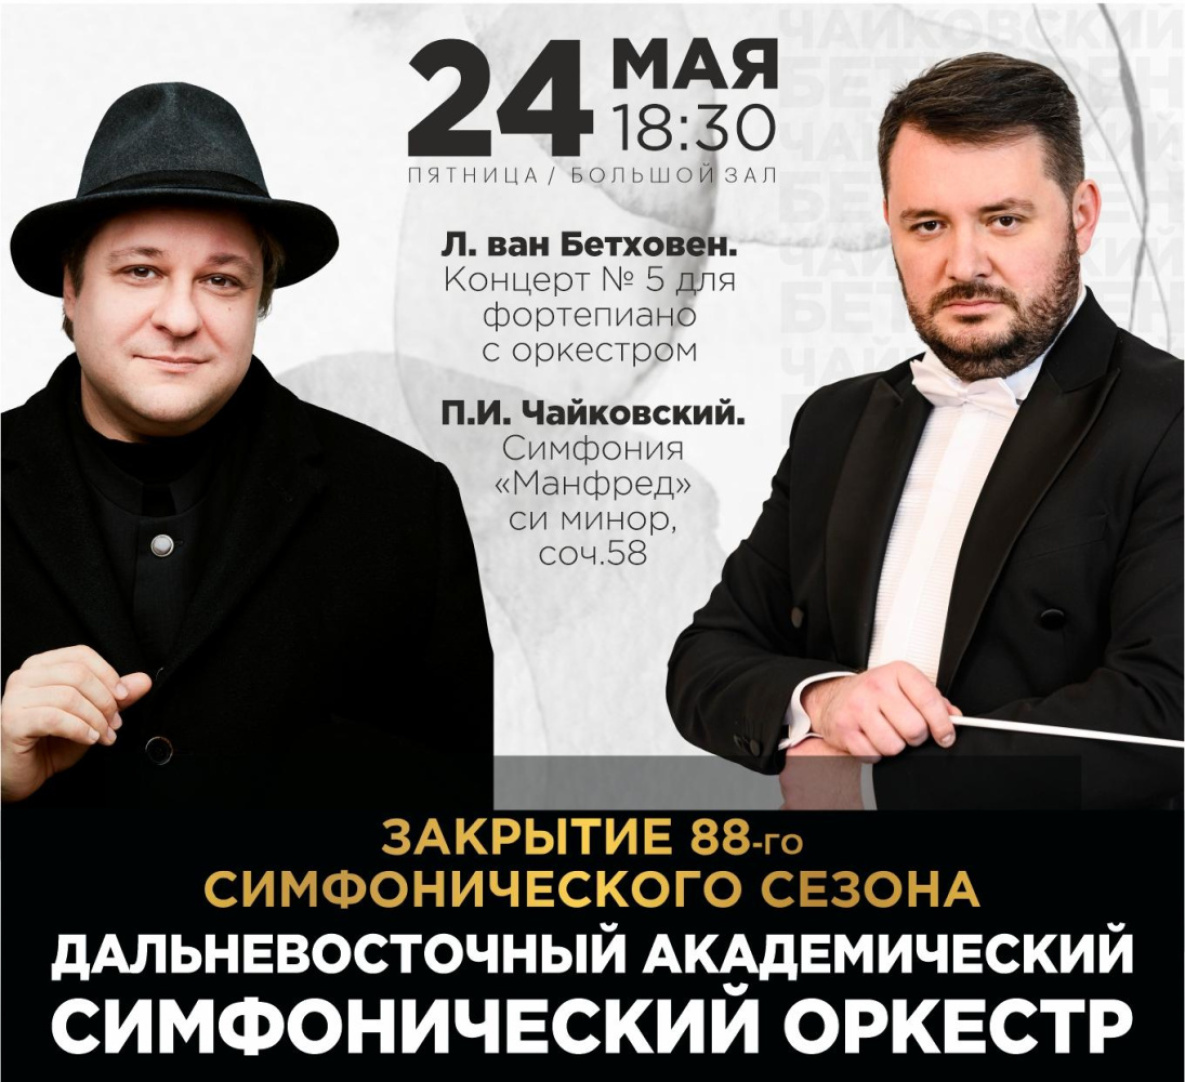 Дальневосточный симфонический оркестр в Хабаровске закрывает 88-й сезон